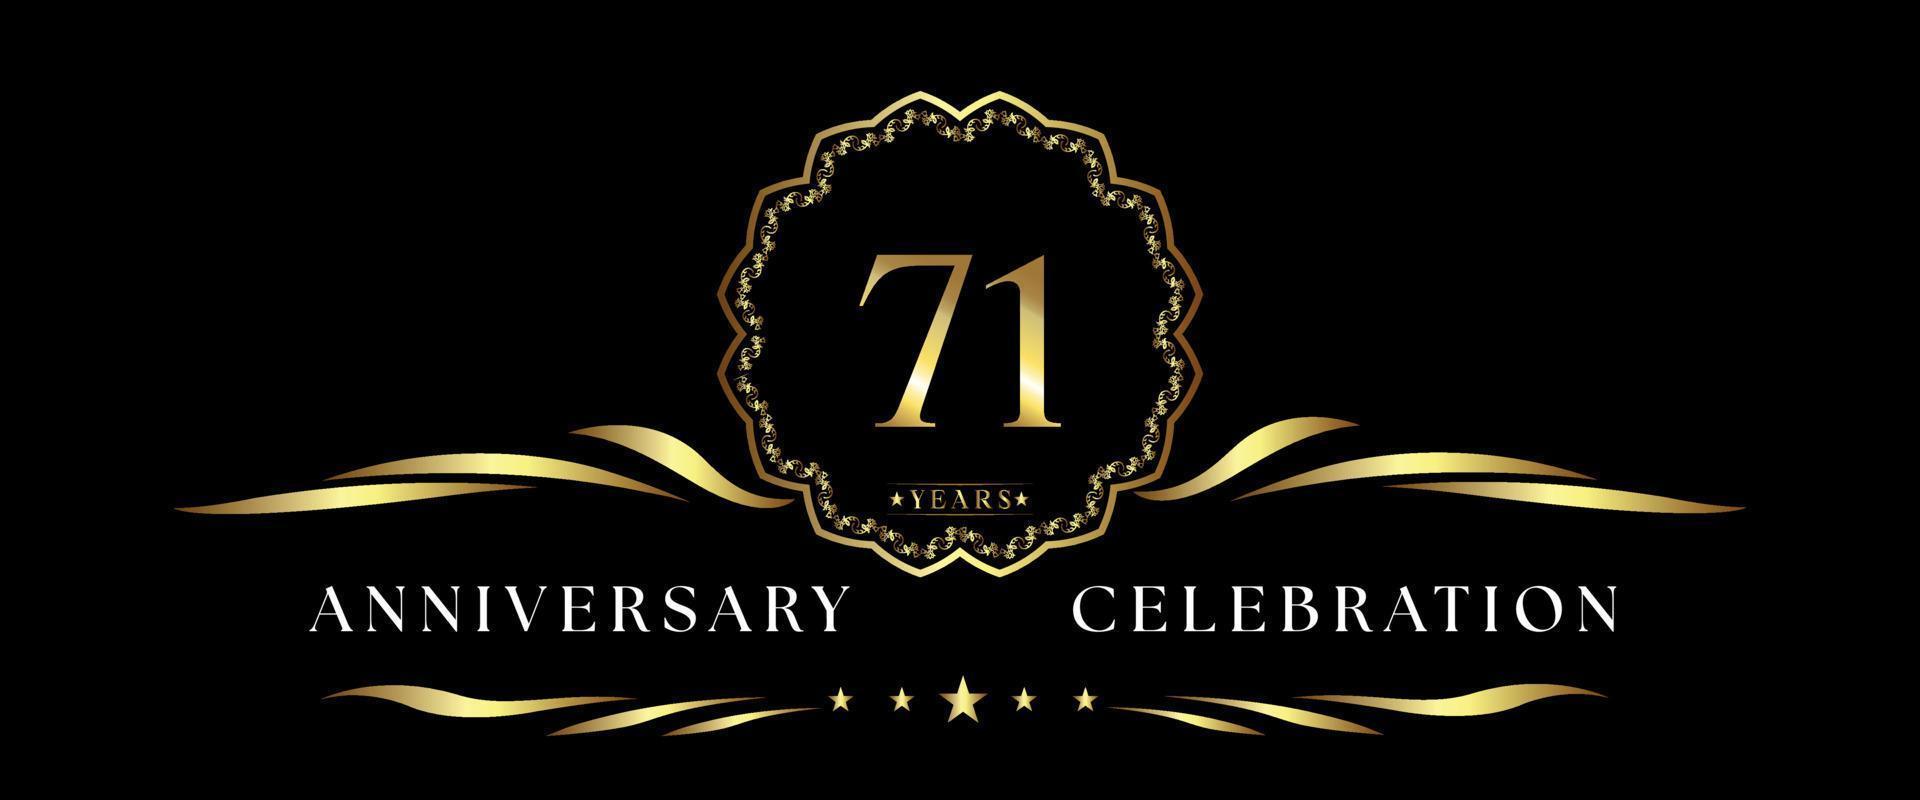 Celebración del aniversario de 71 años con marco decorativo dorado aislado en fondo negro. diseño vectorial para tarjetas de felicitación, fiesta de cumpleaños, boda, fiesta de eventos, ceremonia. Logotipo del aniversario de 71 años. vector